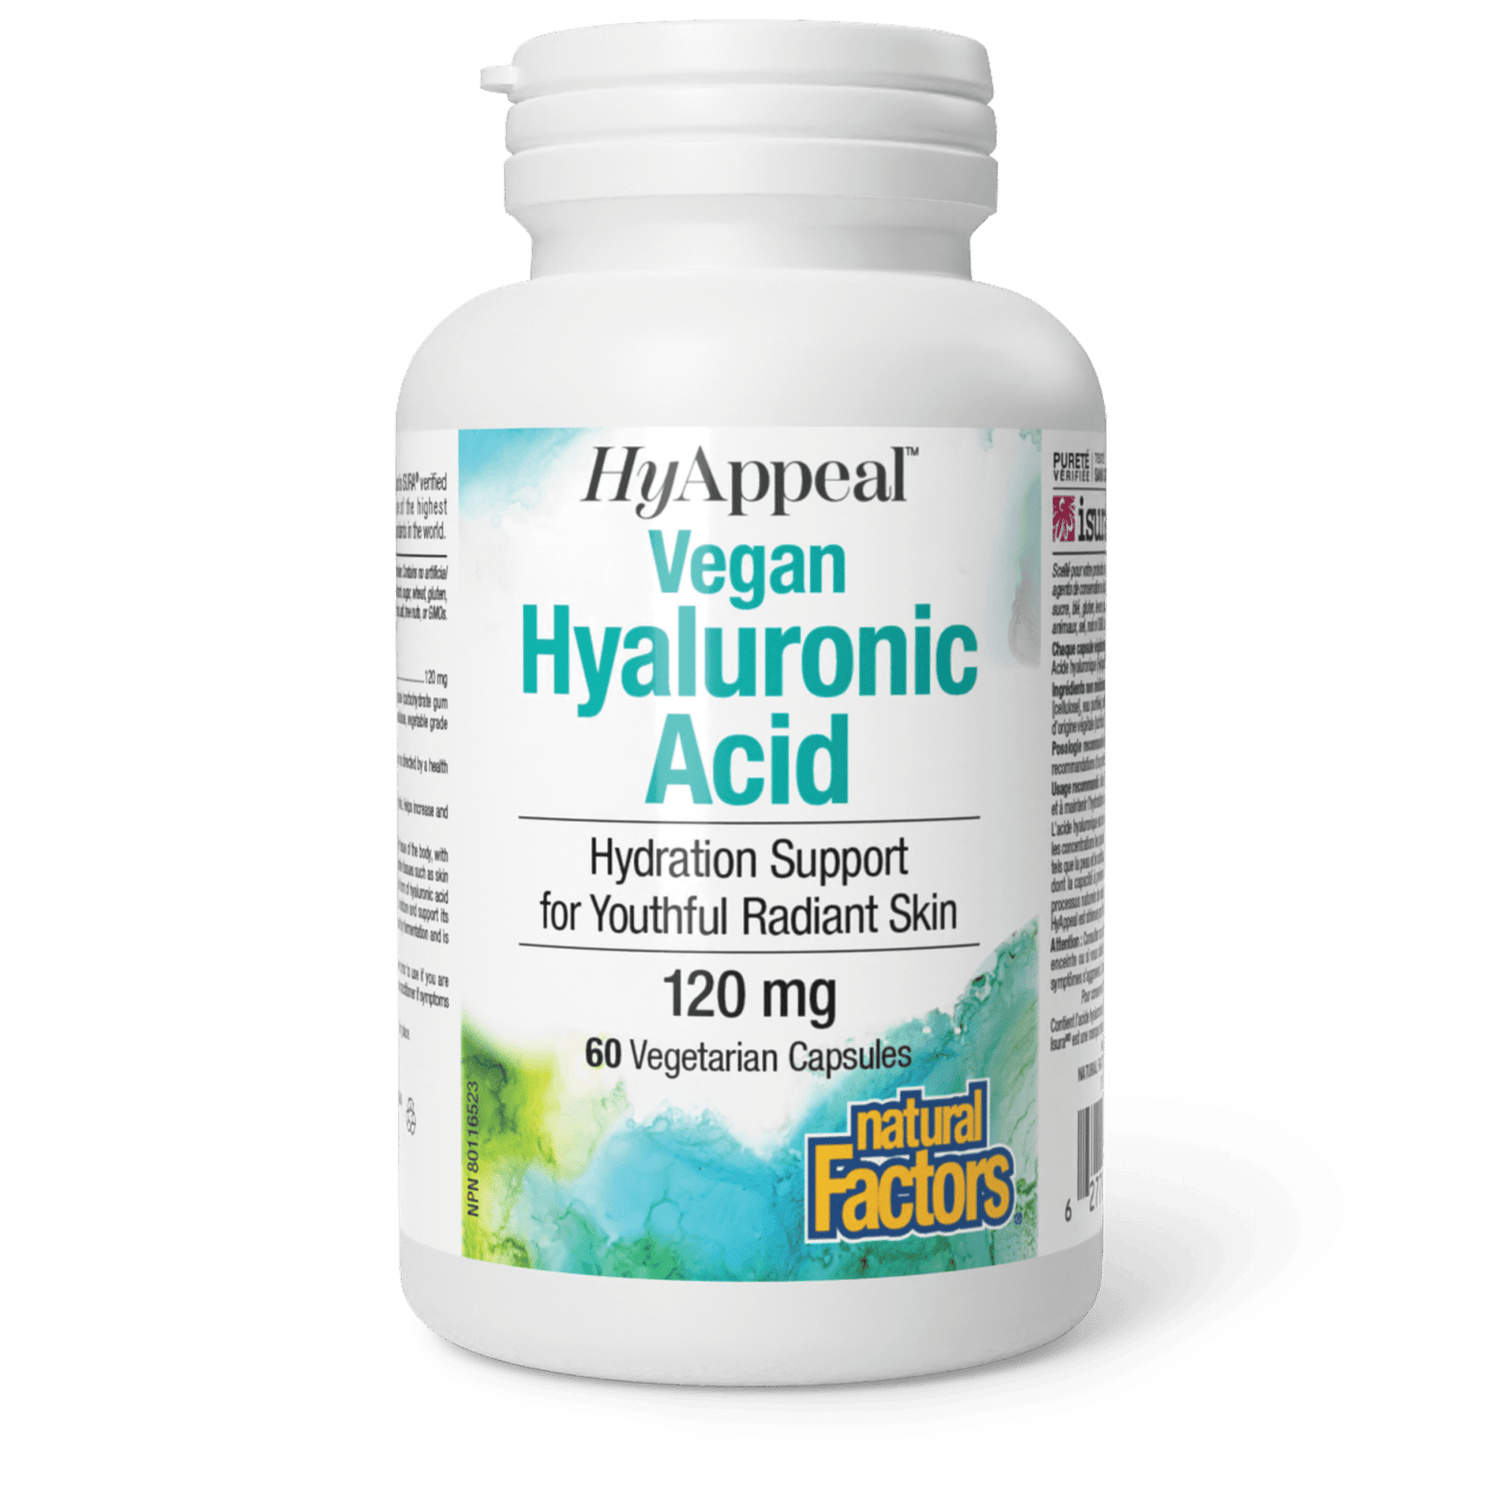 HyAppeal Vegan Hyaluronic Acid, Natural Factors|v|image|2680